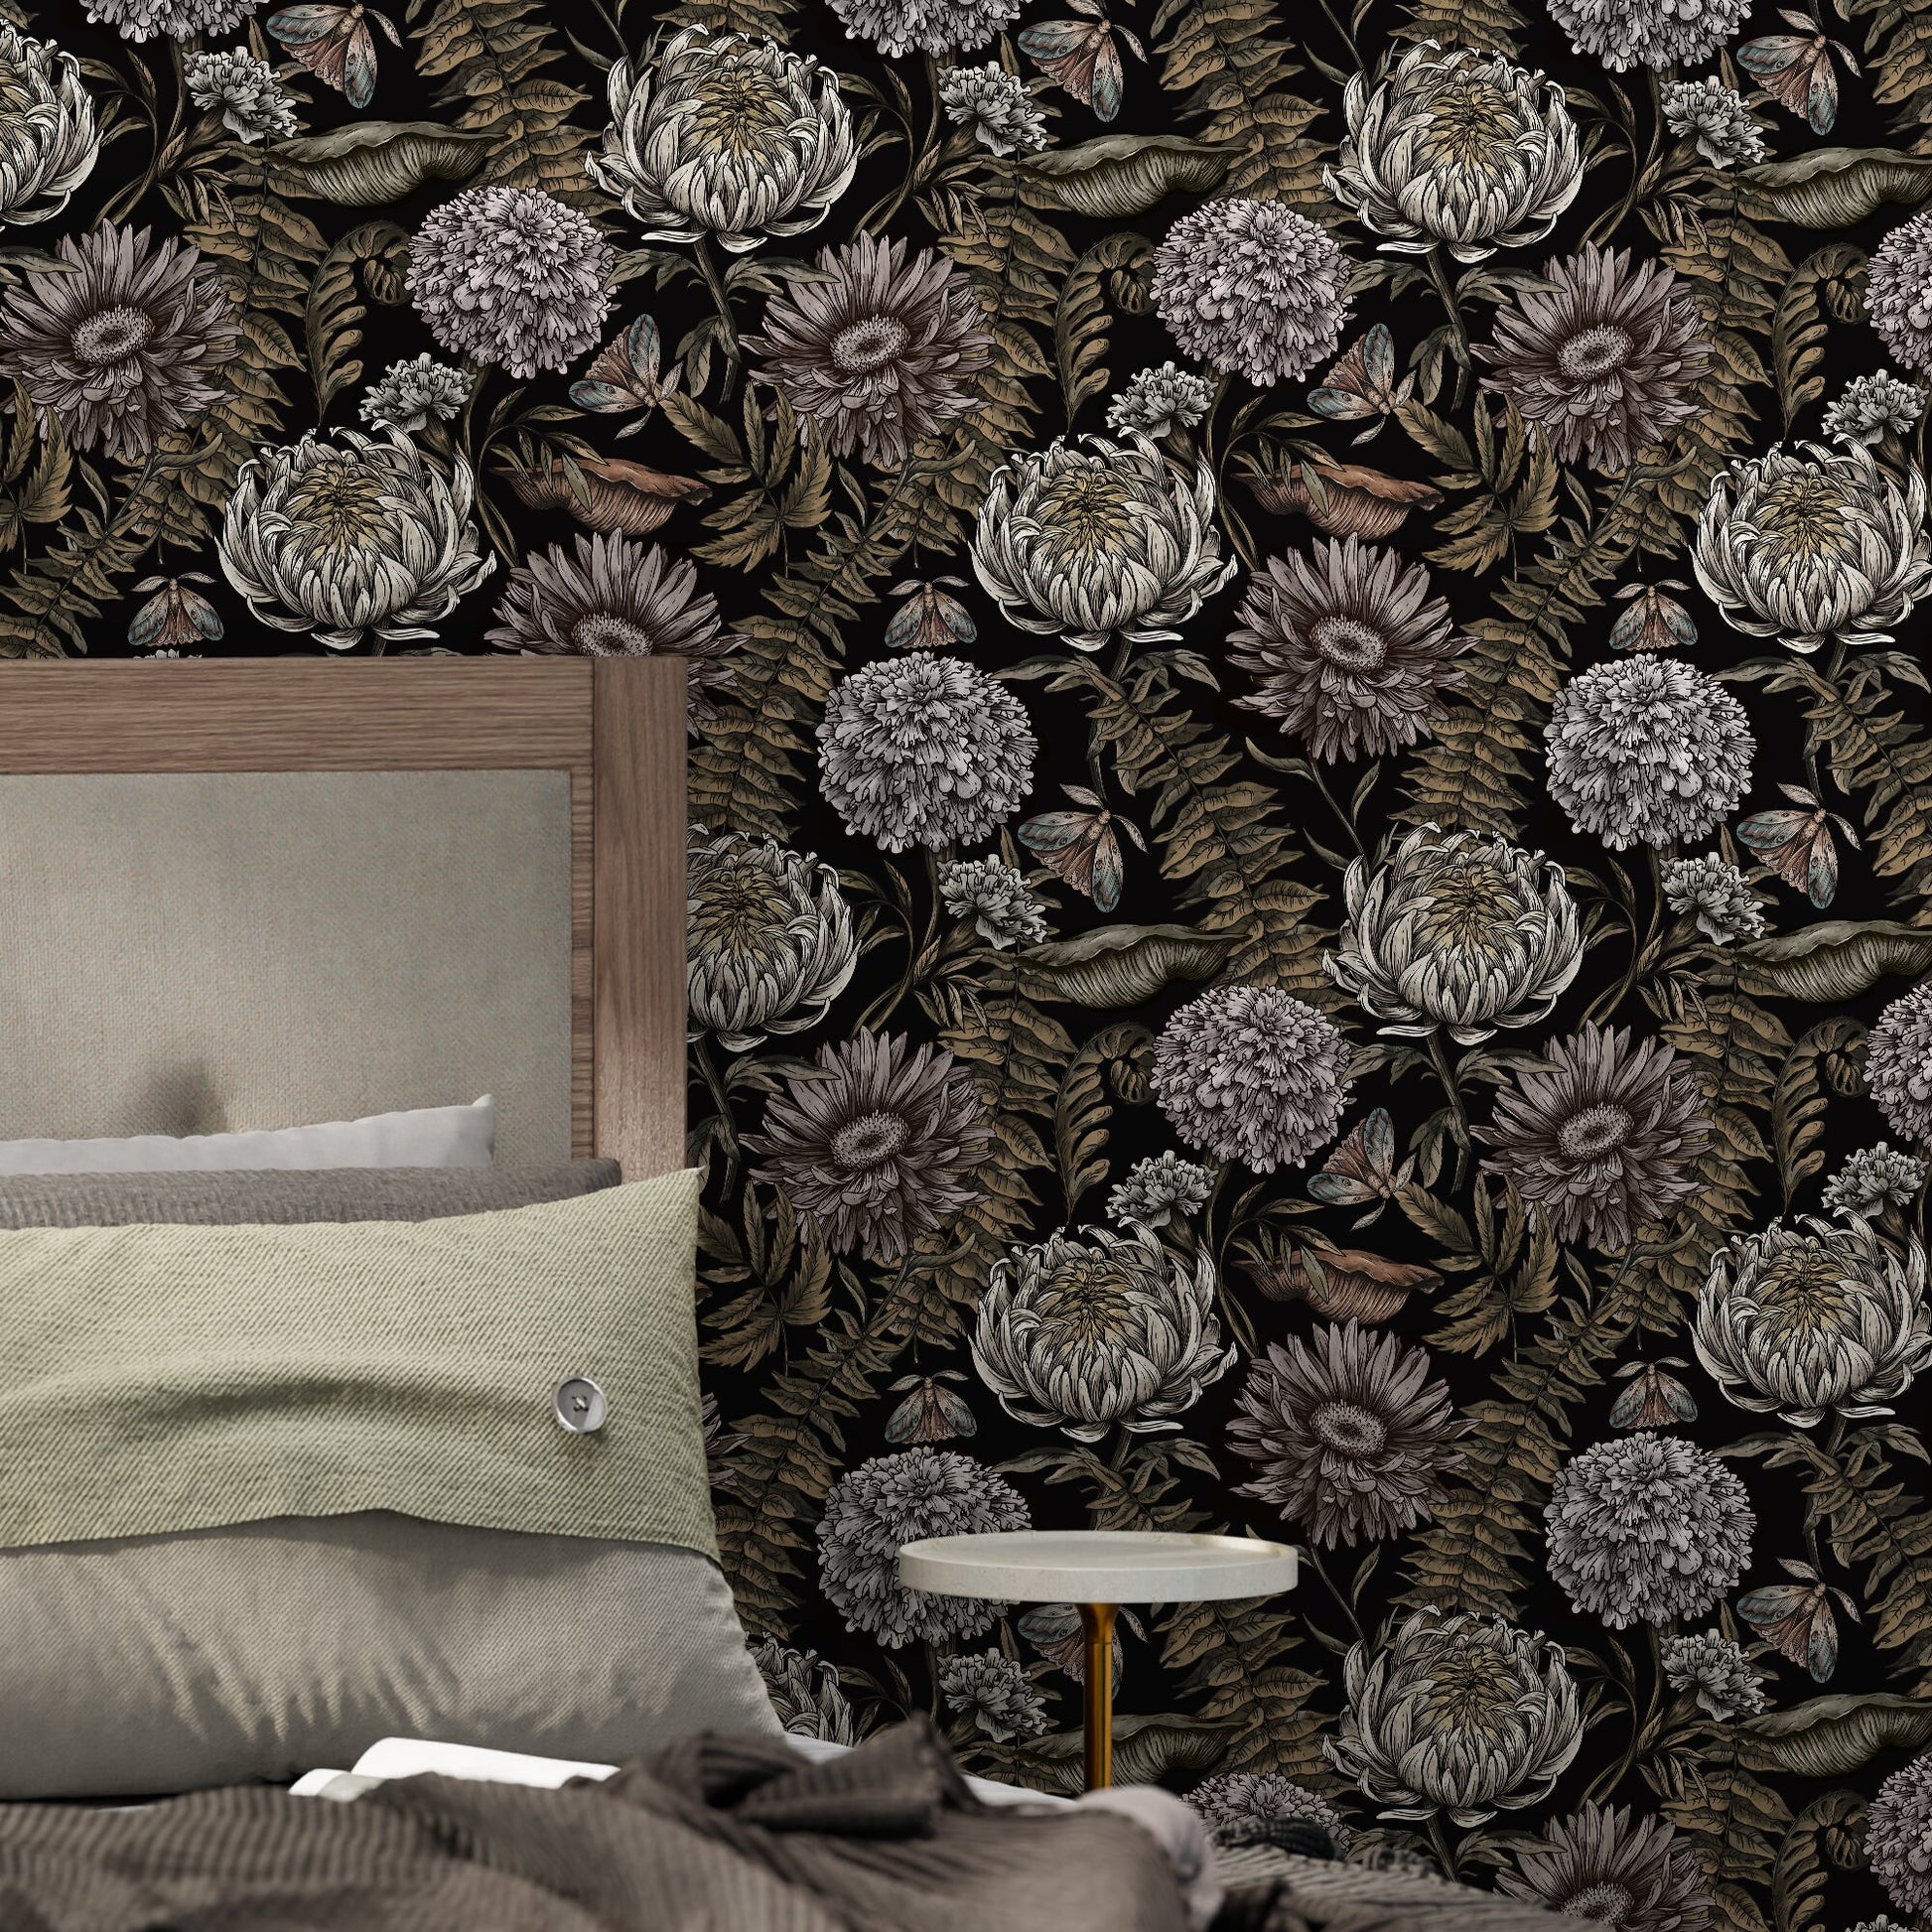 Dark Floral Wallpaper Peonny and Butterflies Wallpaper Peel and Stick and Traditional Wallpaper - D823